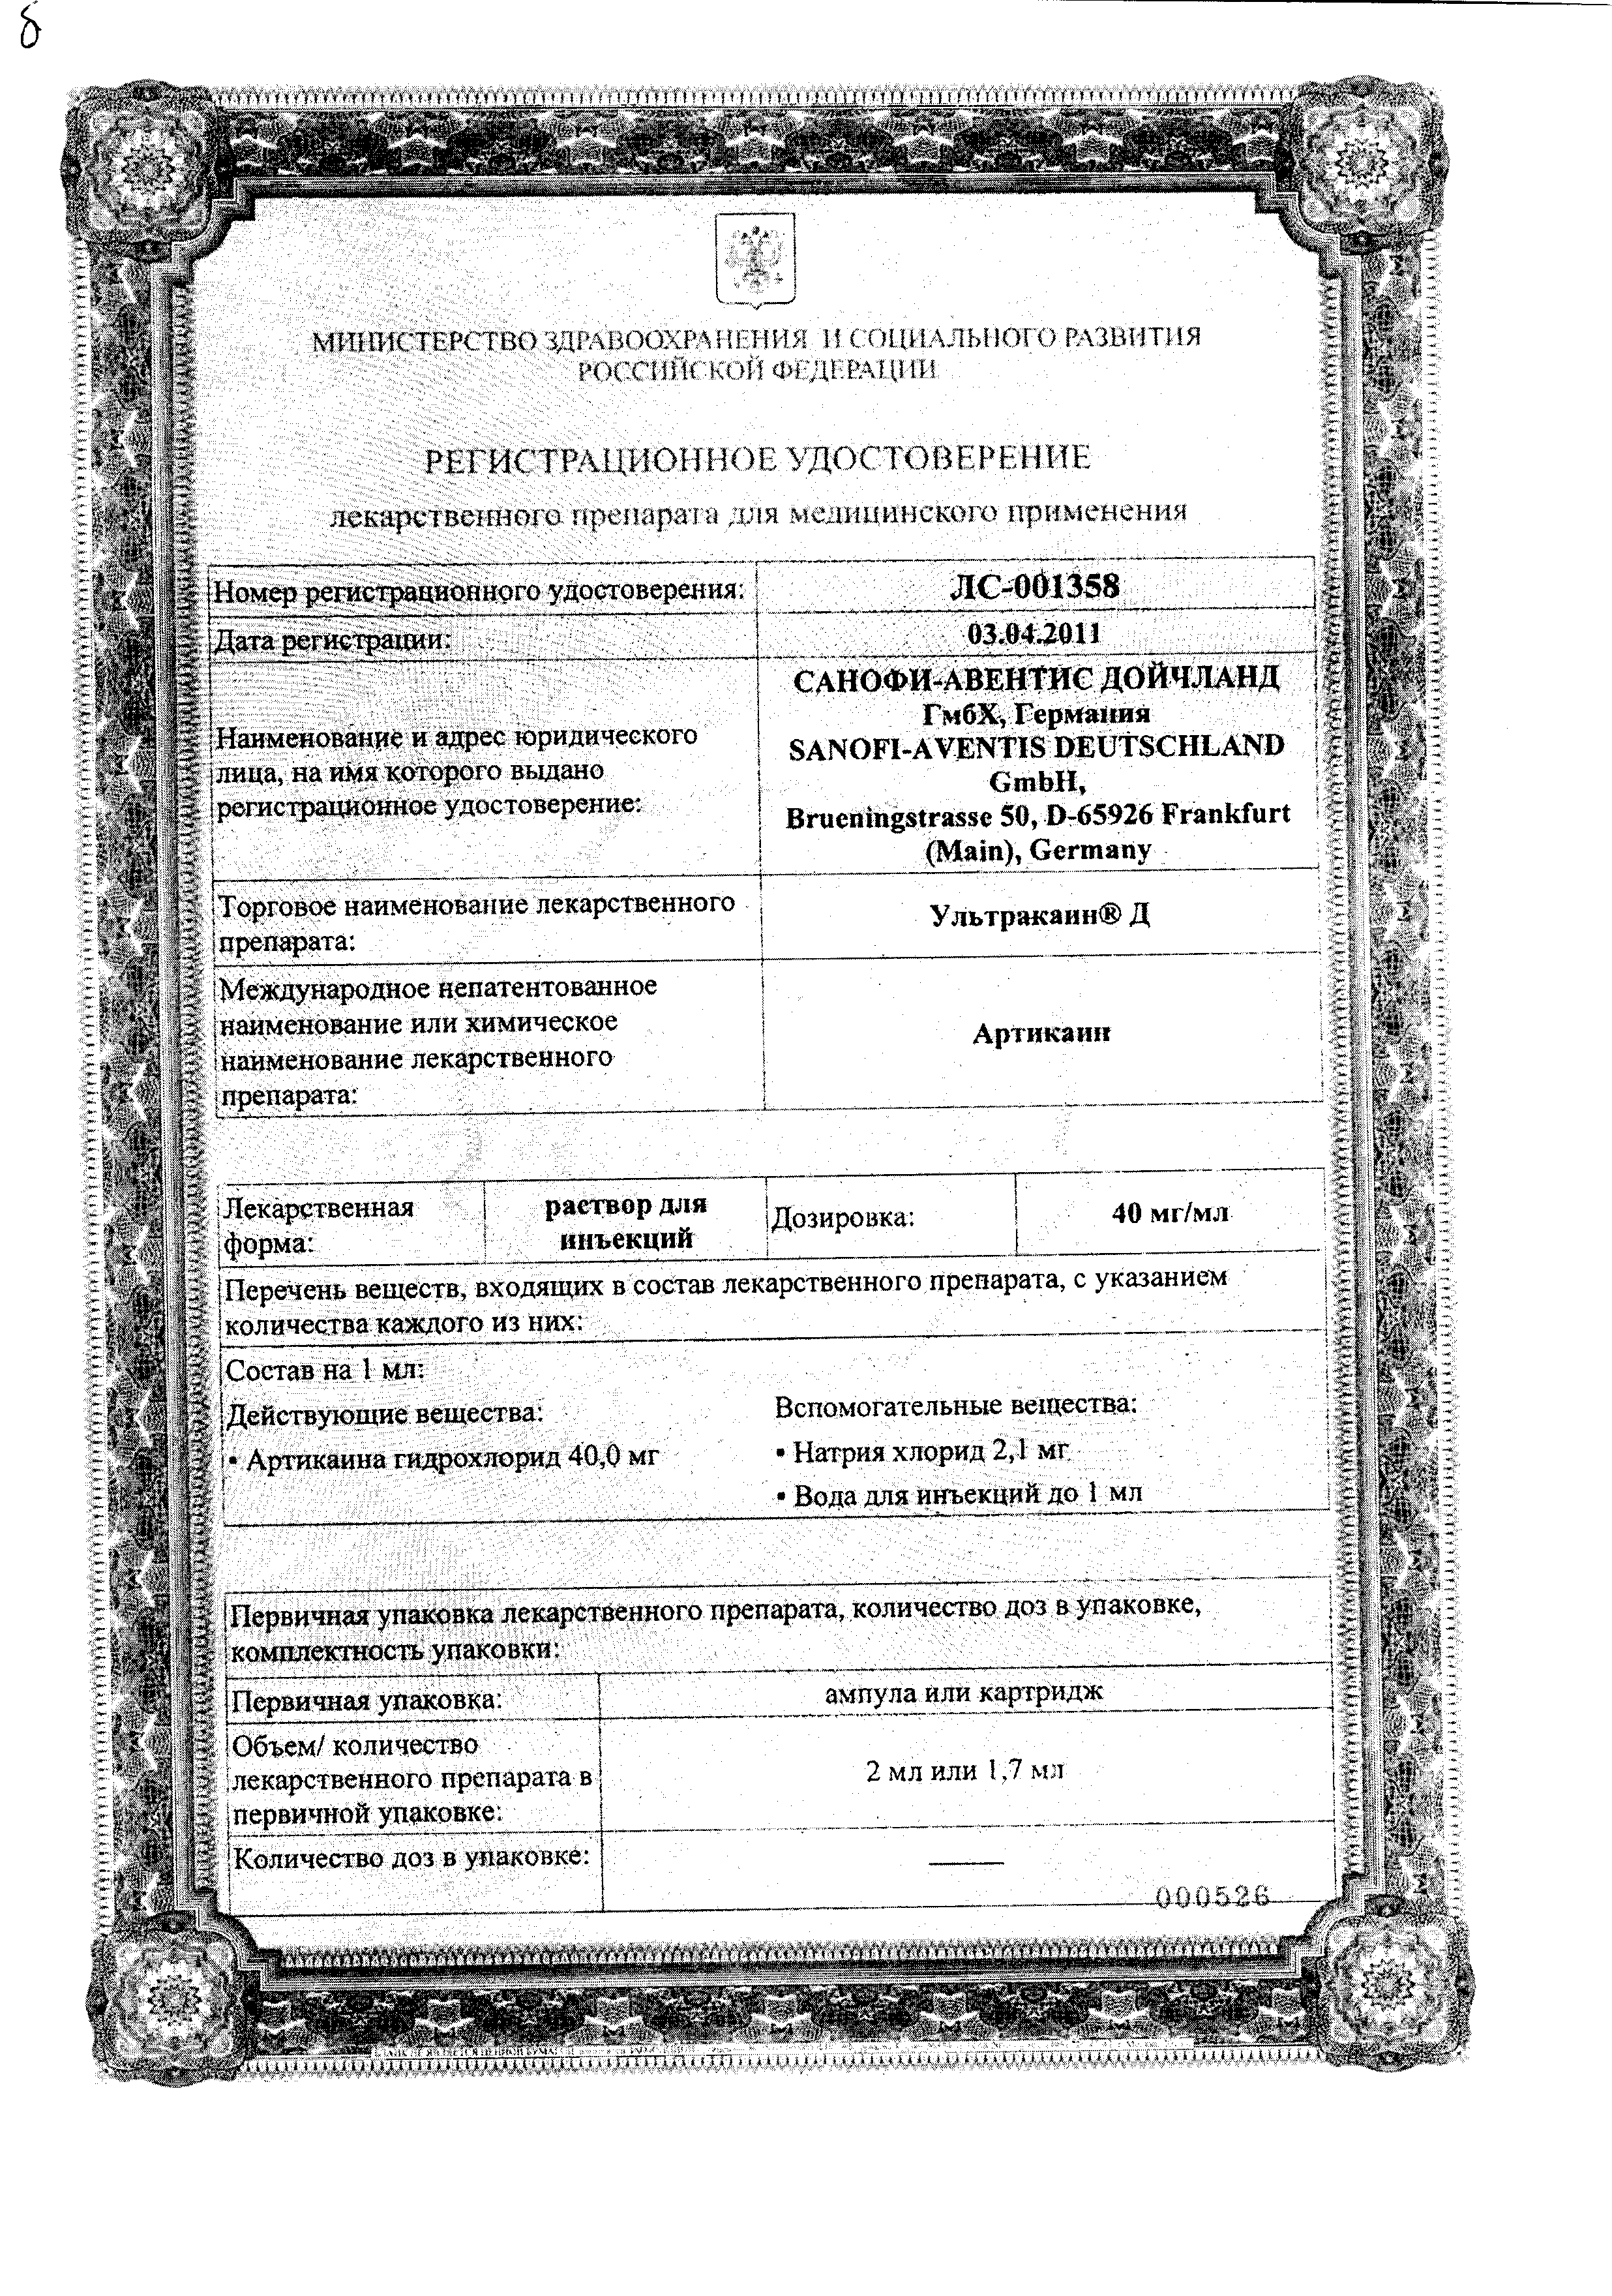 Ультракаин Д сертификат